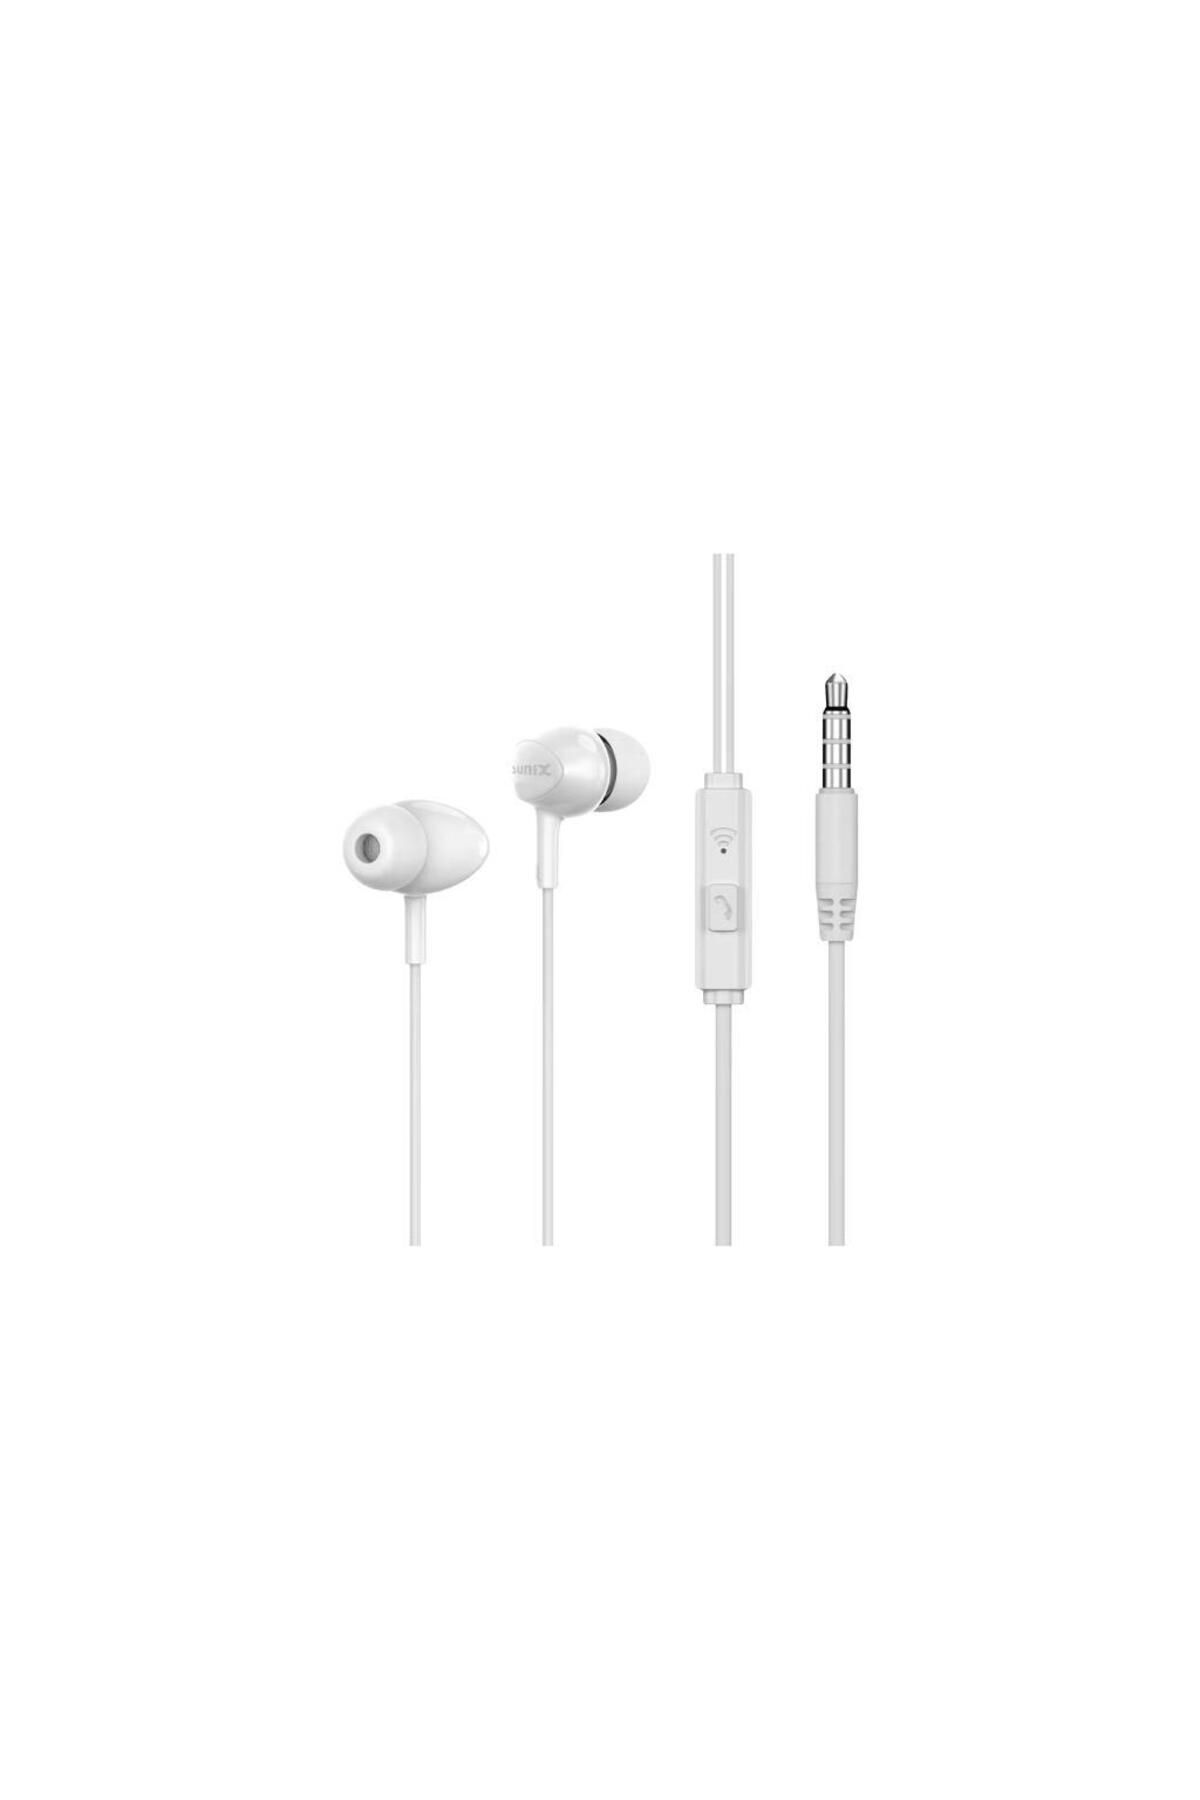 Sunix Stereo Mikrofonlu 3.5mm Kulak Içi Kablolu Kulaklık Beyaz Sx-16